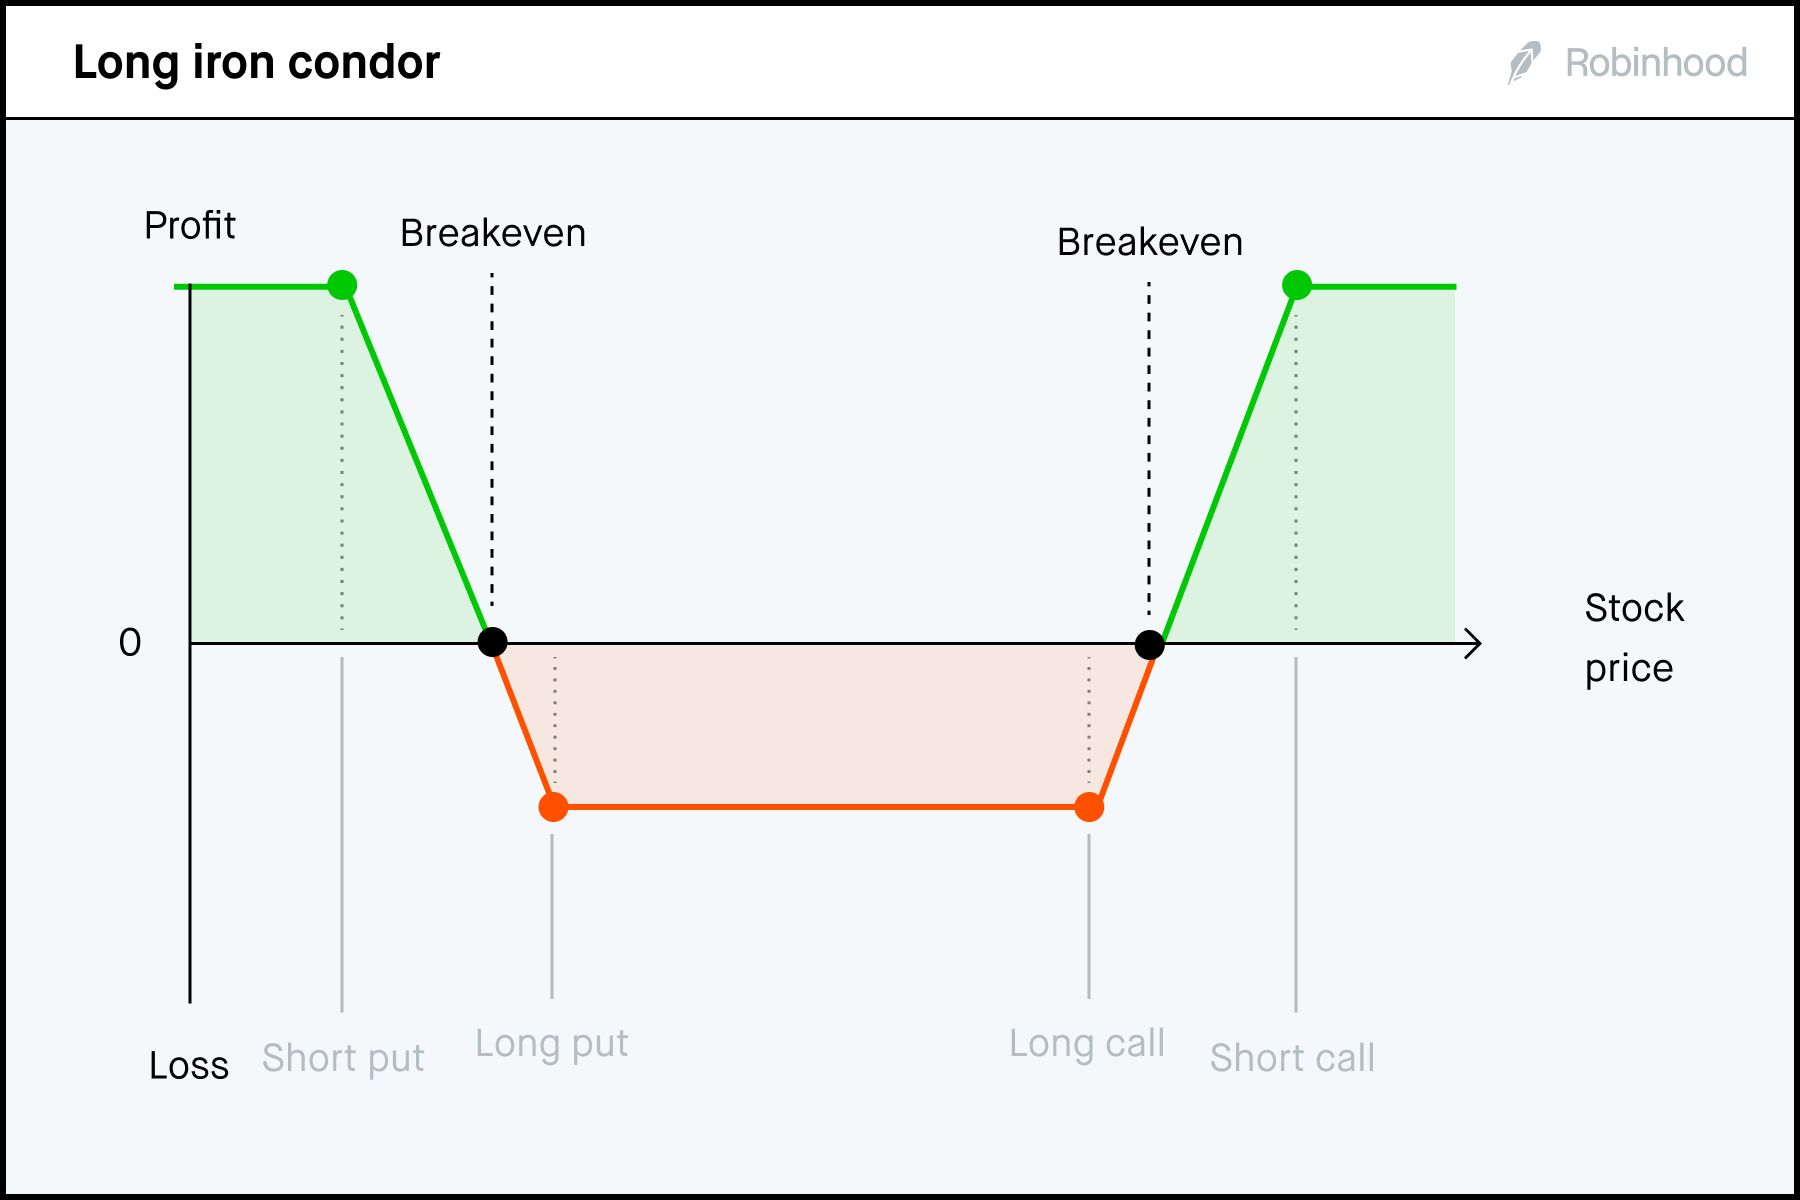 Long iron condor P/L chart 3x